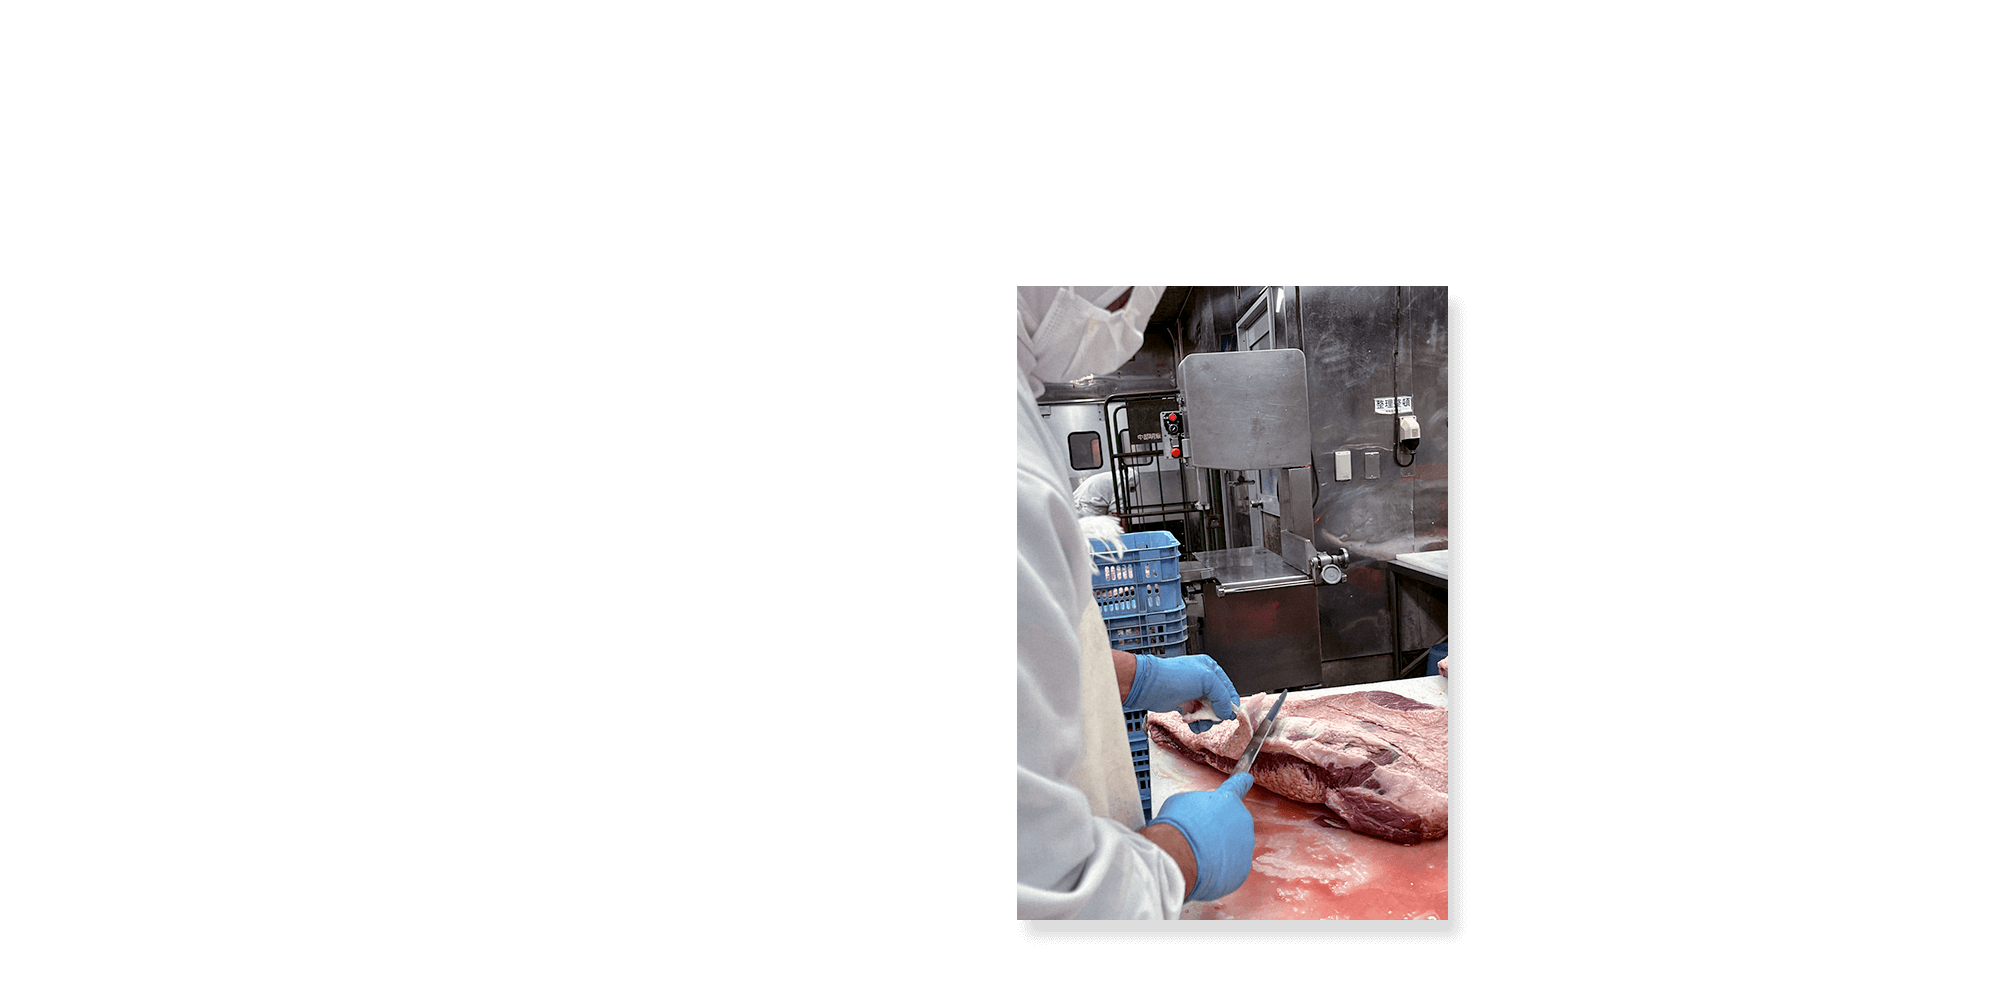 昭和ミート株式会社 徹底した衛生管理で安全に、そして美味しく これからも信頼いただける食肉加工を行って参ります